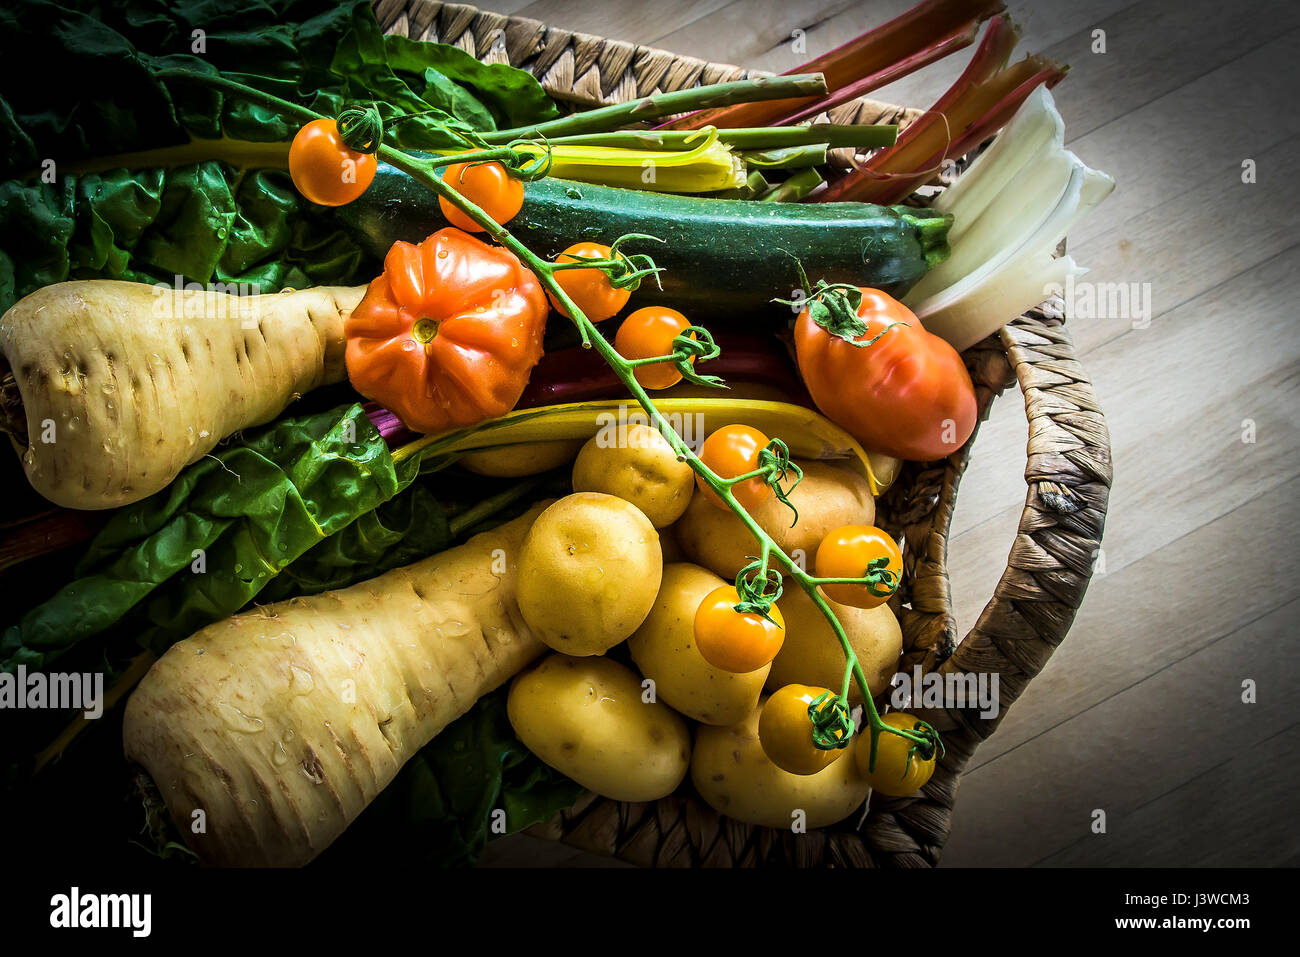 Verschiedene frische Gemüse essen Nahrungsquelle Zutaten Tomaten Pastinaken Kartoffeln Zutaten zum Kochen Stockfoto